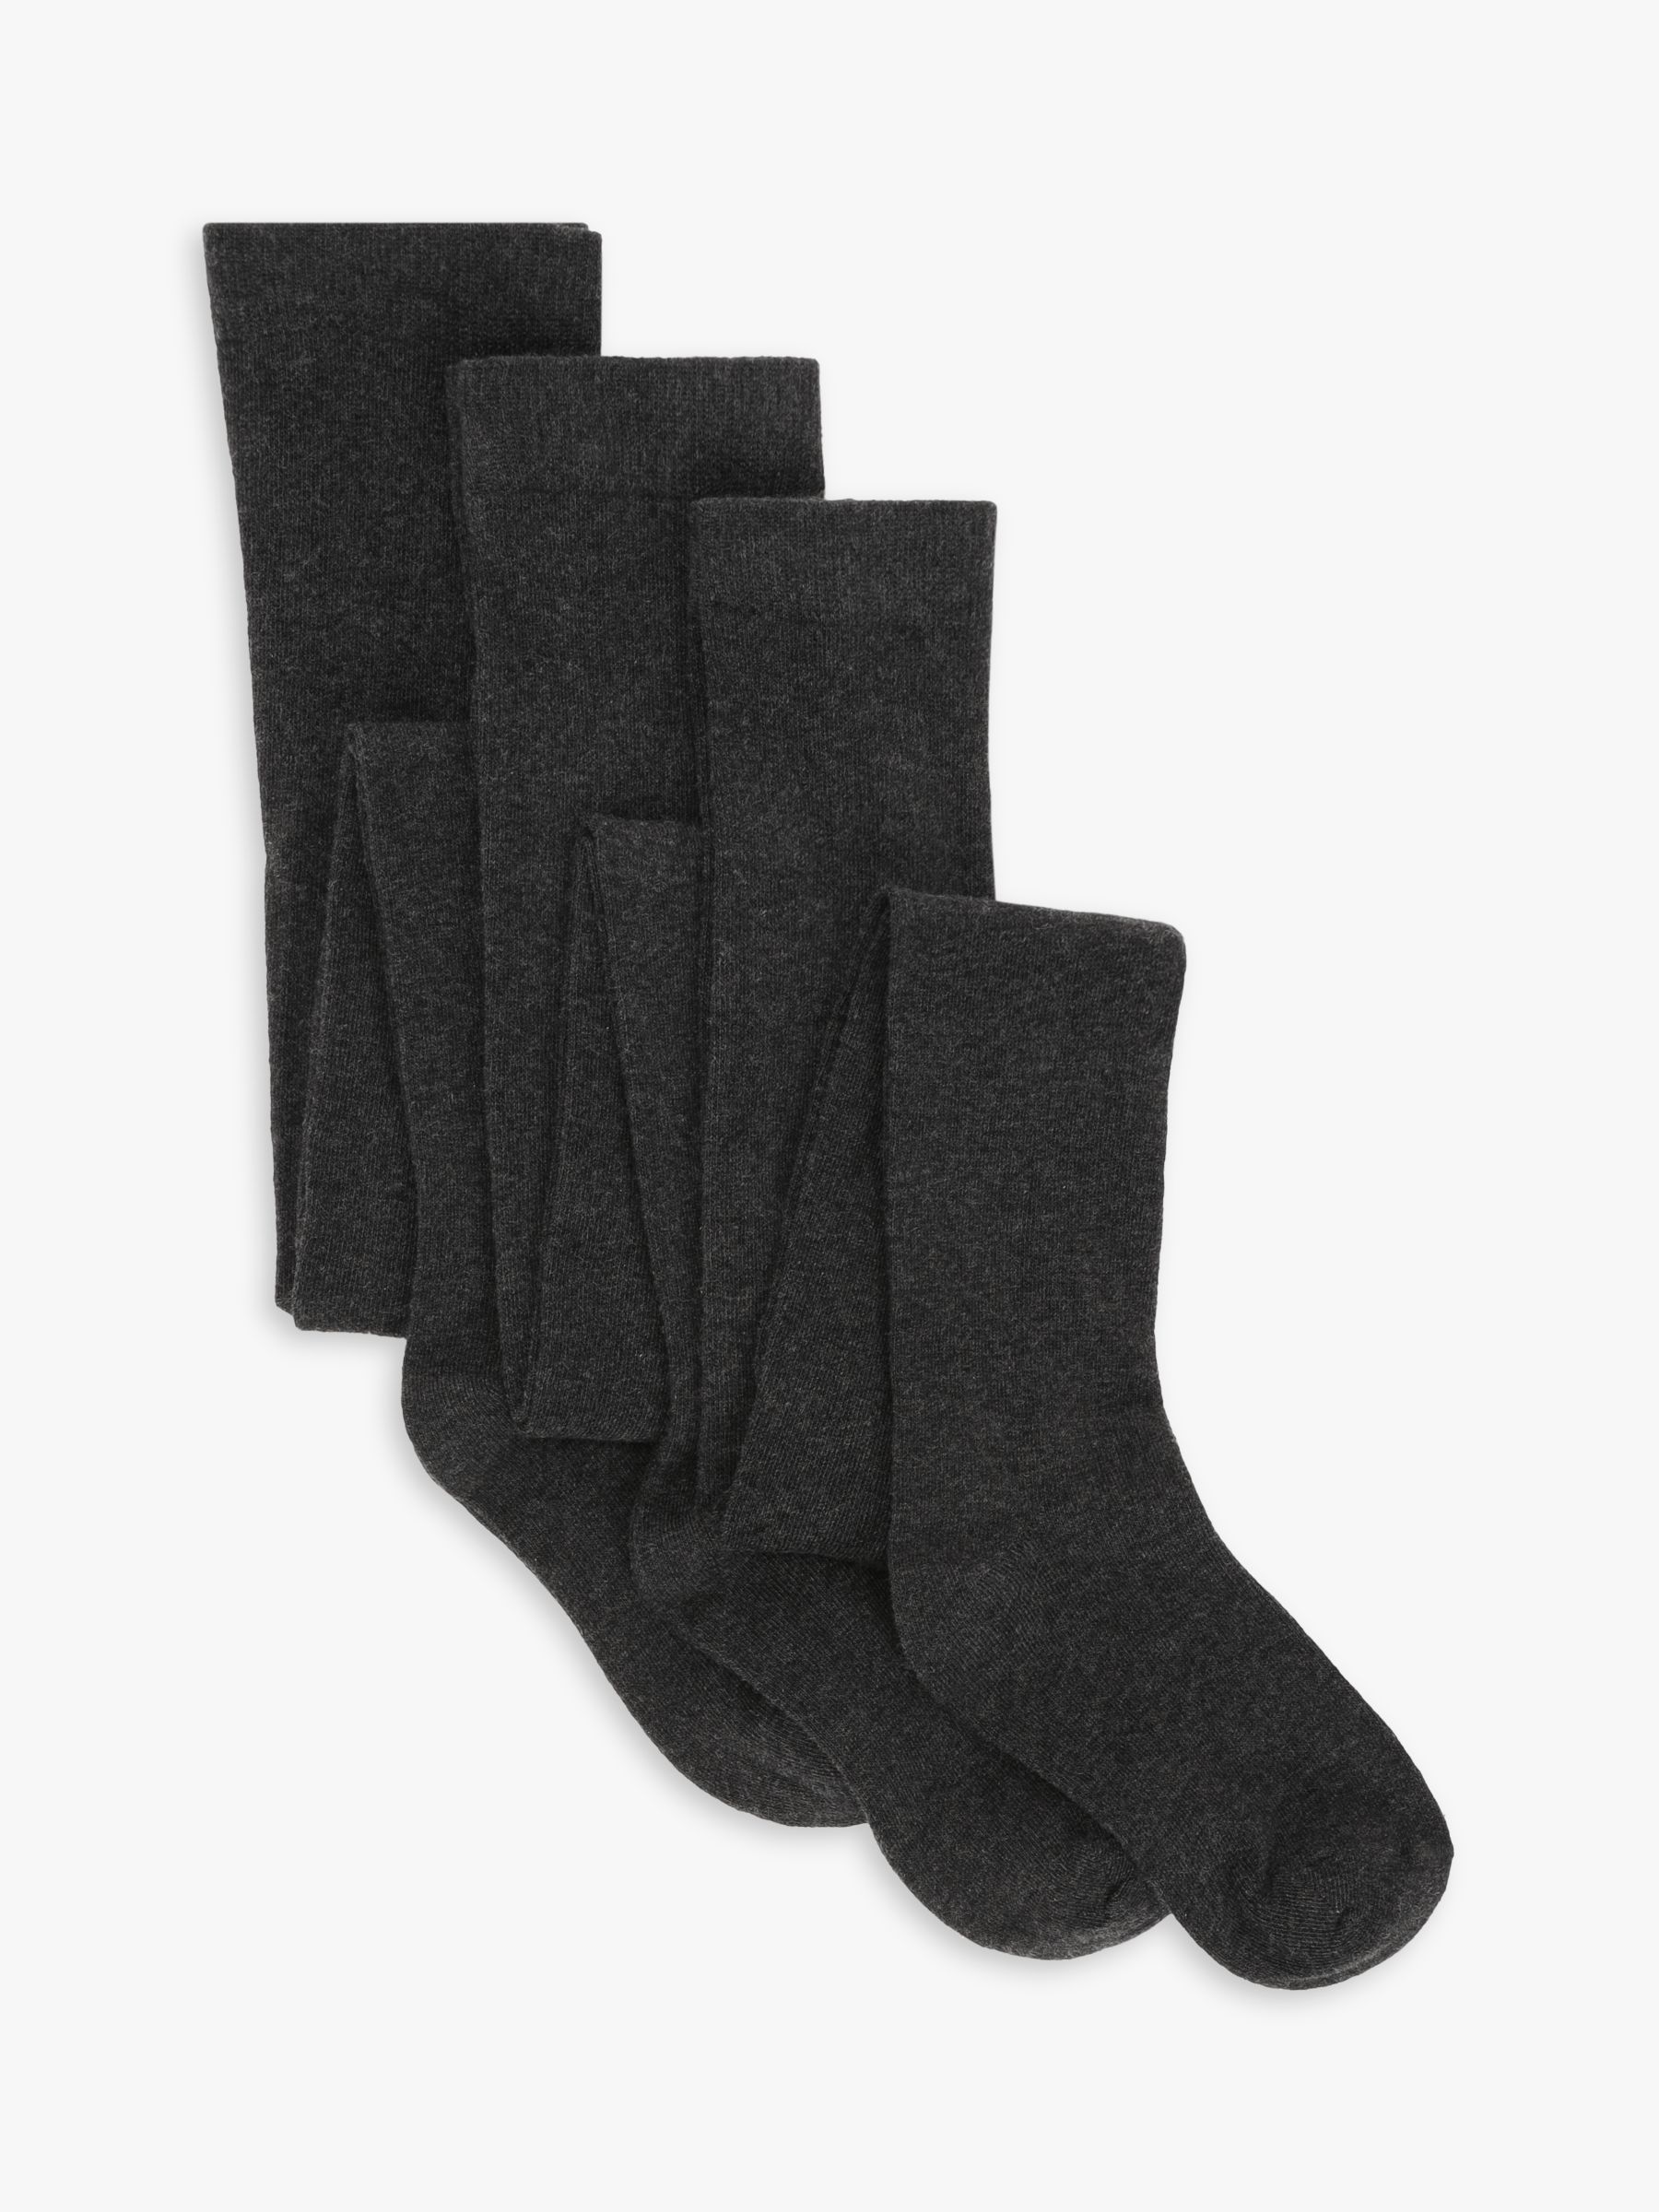 2-pack wool-blend tights - Black/Grey marl - Kids